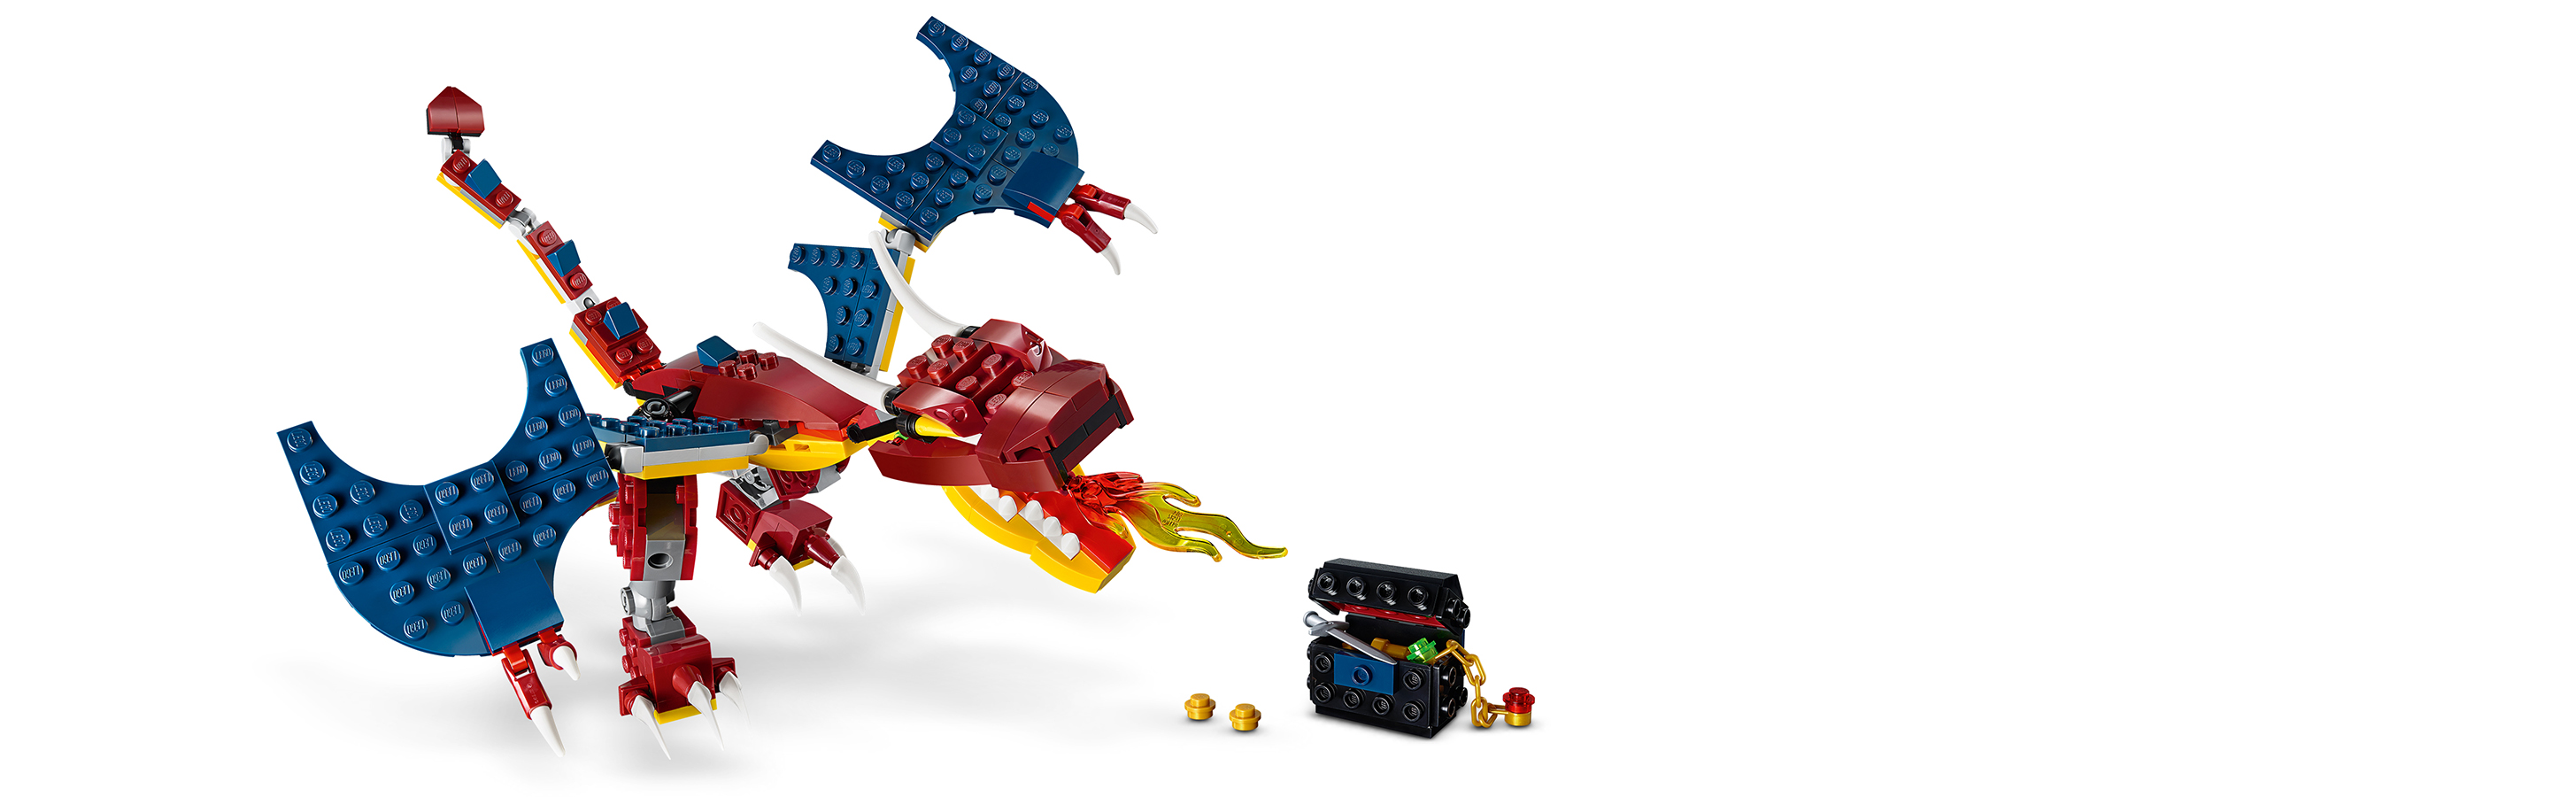 Třikrát více kreativní zábavy s LEGO® kostkami